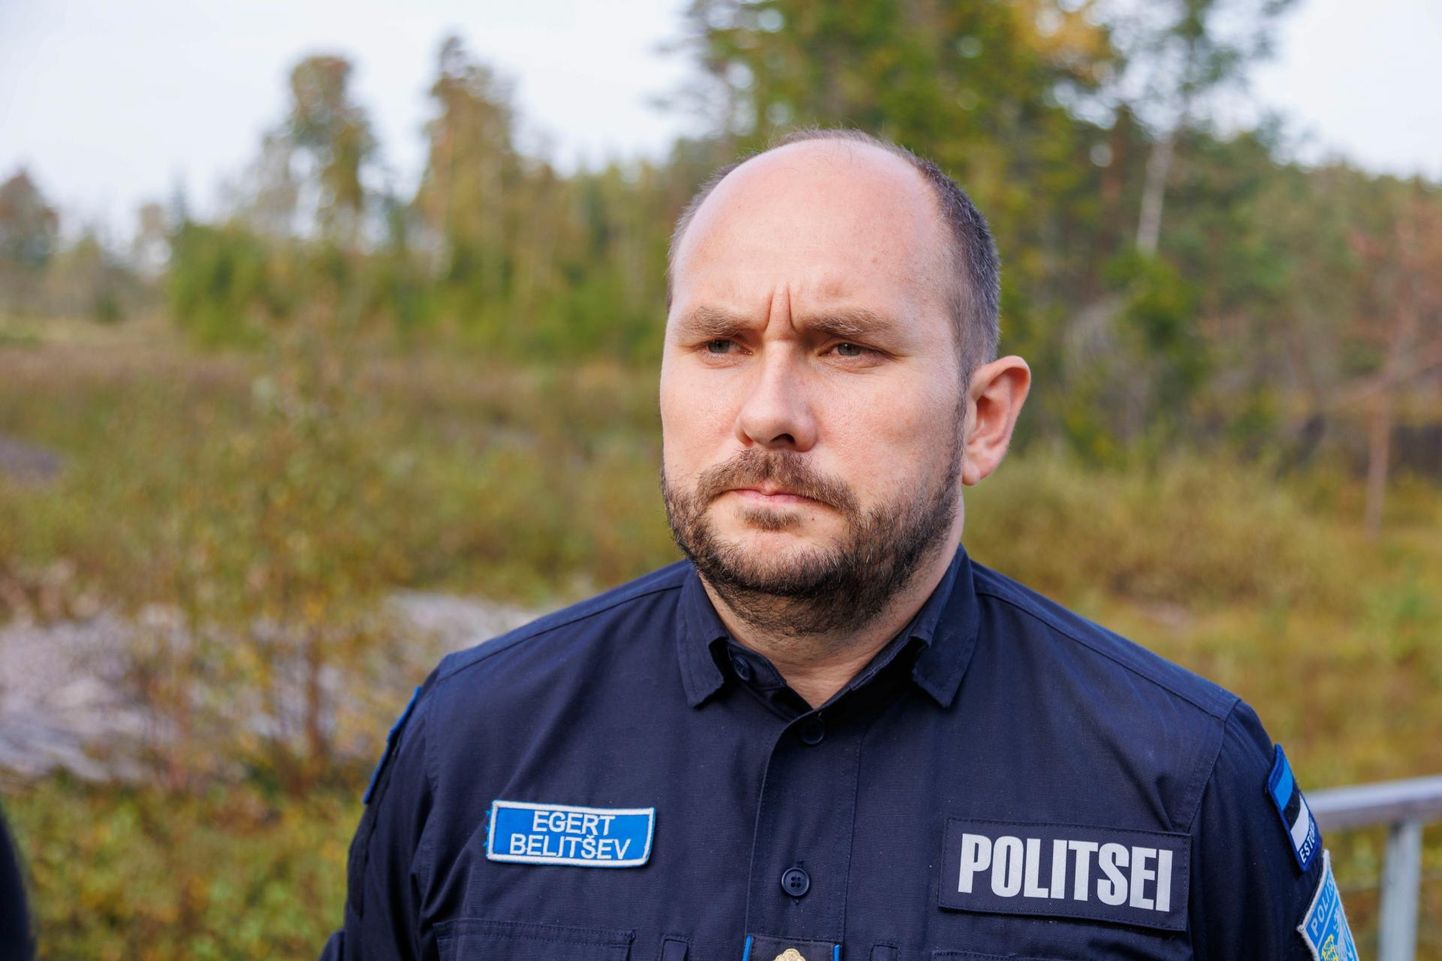 Nagu ütles politsei- ja piirivalveameti peadirektor Egert Belitšev, on politsei juhtumi uurimiseks alustanud kriminaalmenetlust ja teeb koostööd Läti korrakaitsega, sest seal levisid samasugused kirjad.